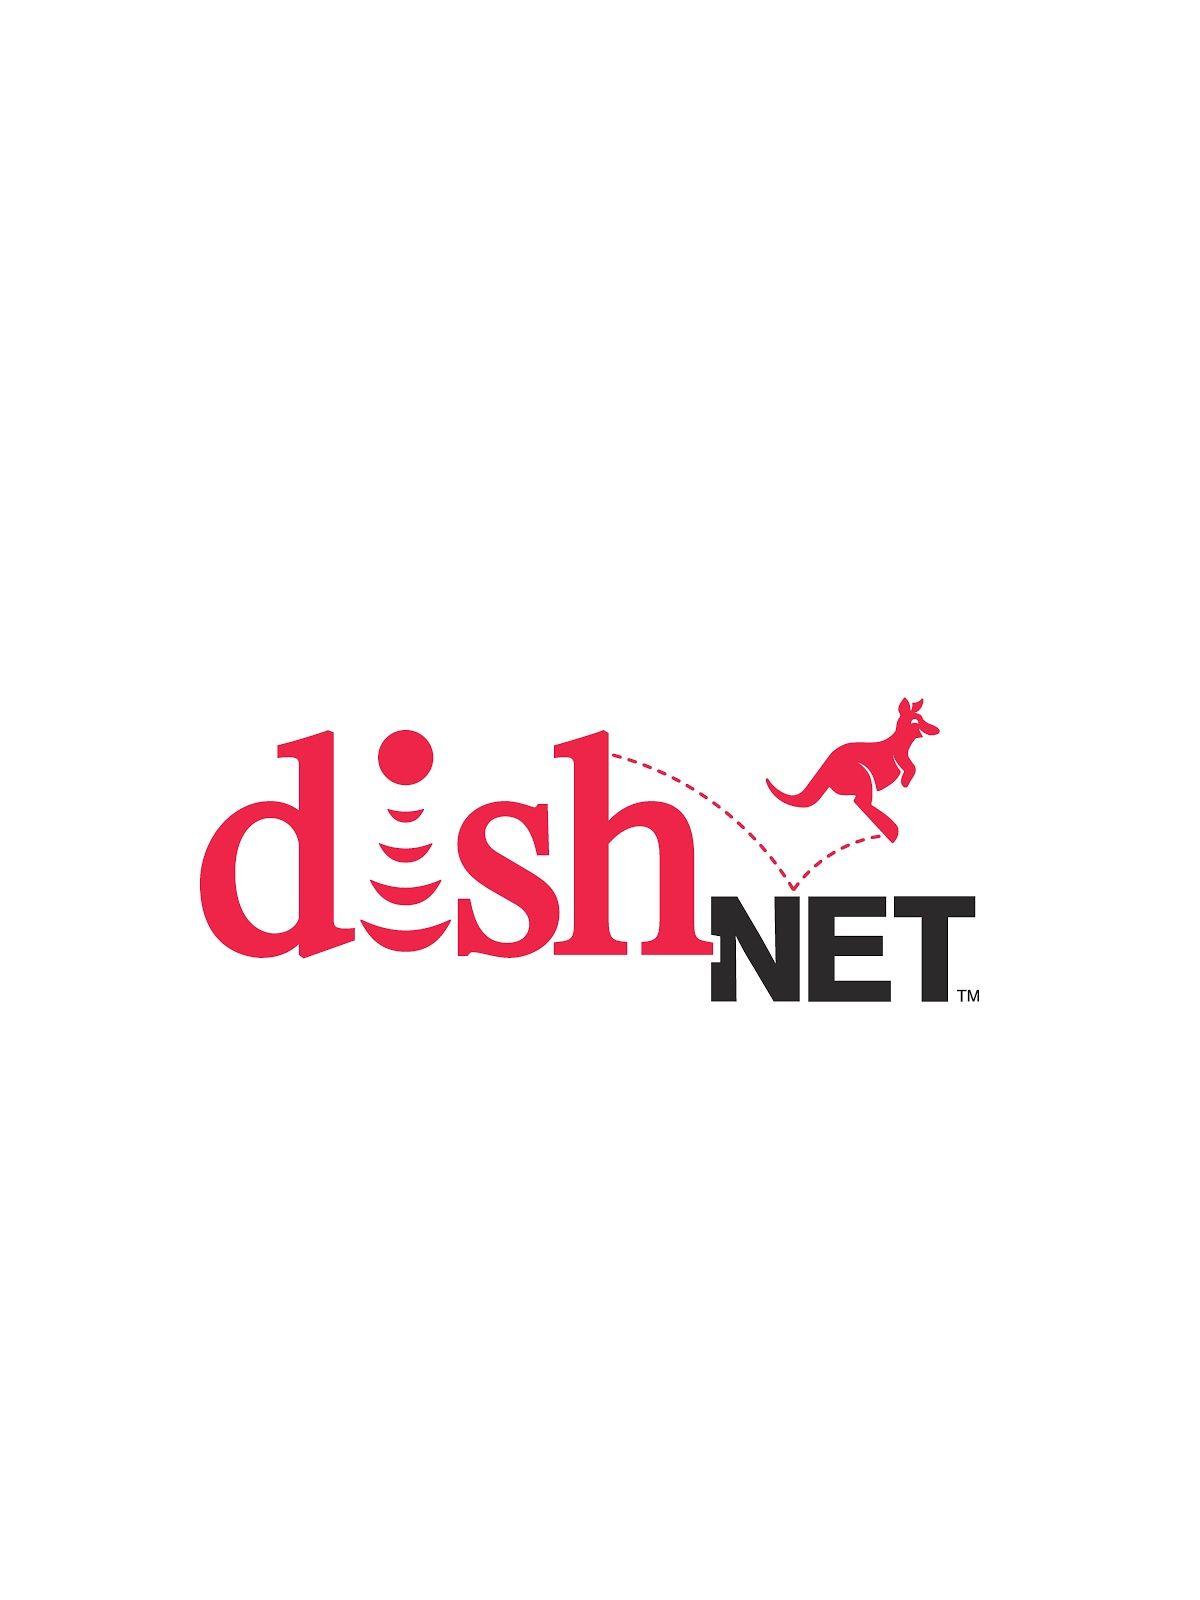 dishNET Logo - TruMedia: October 2012